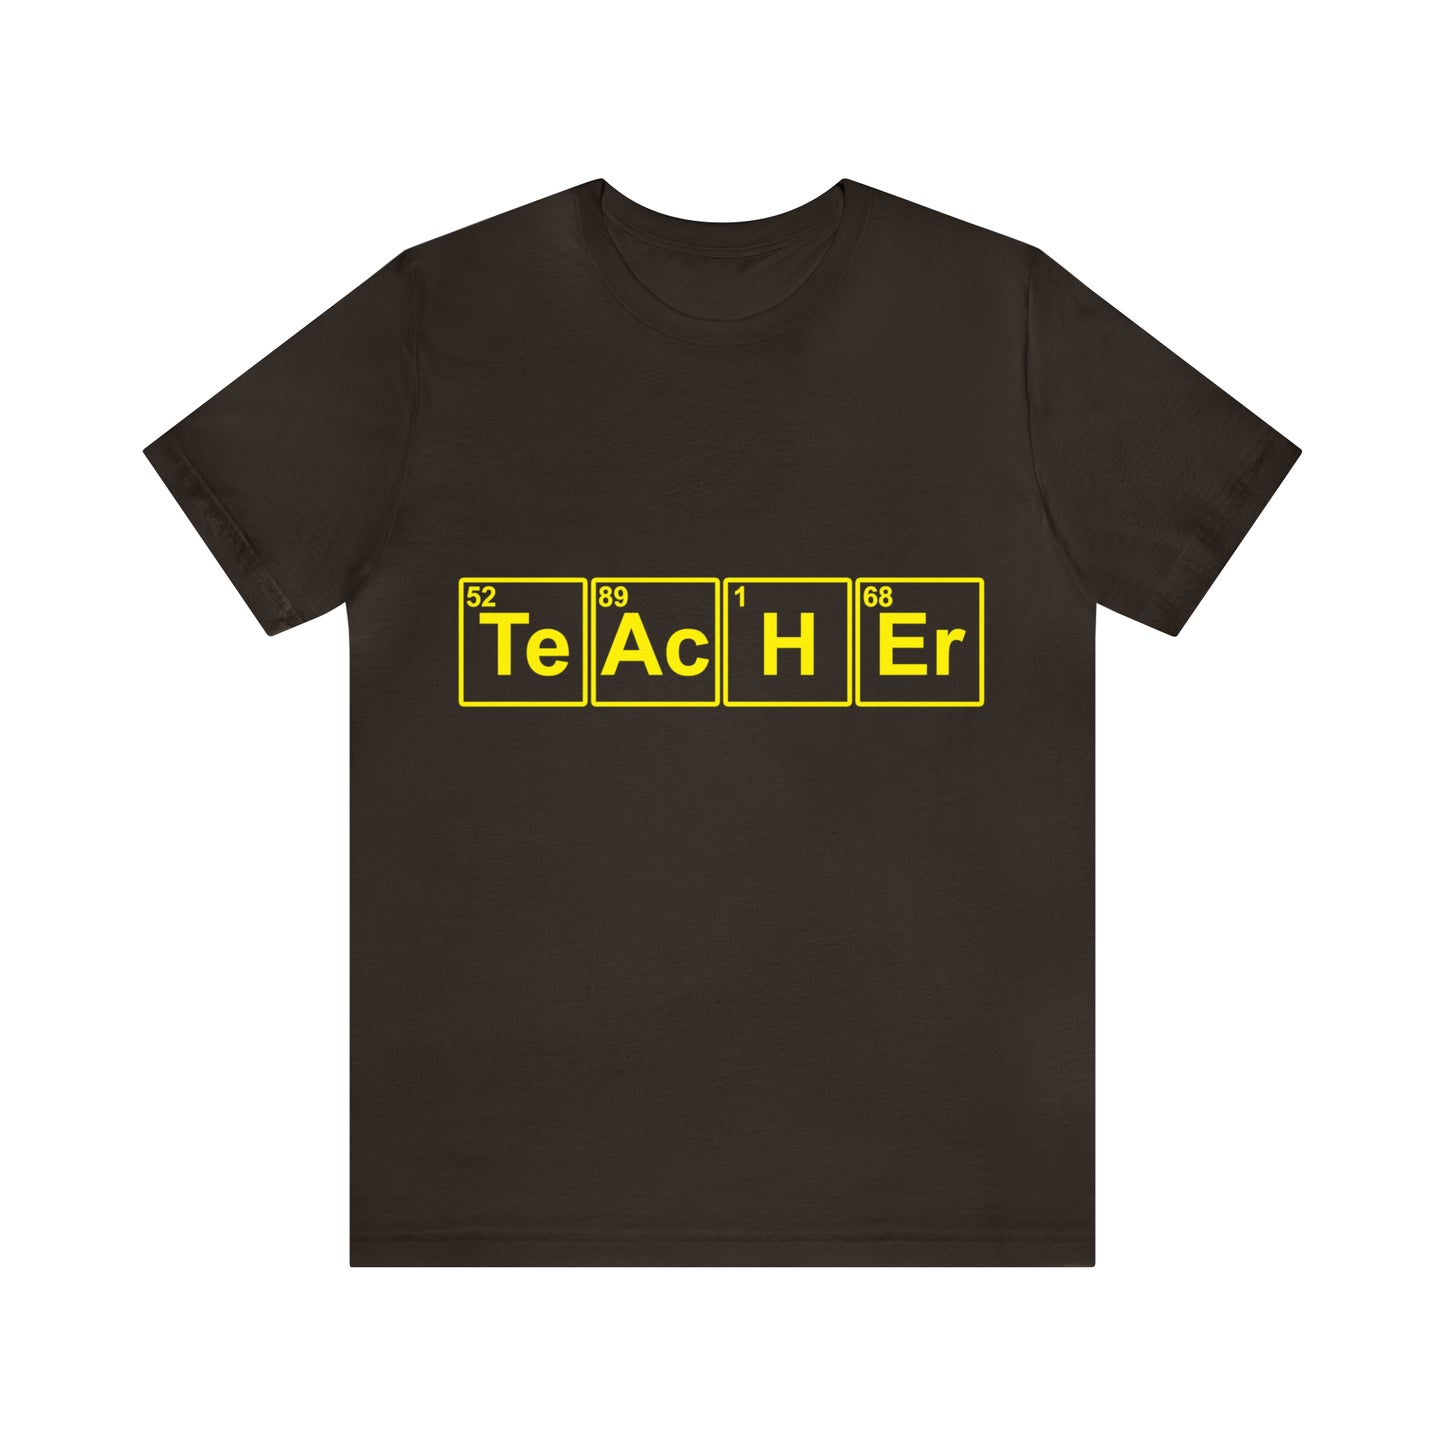 TeAcHEr - Unisex T-Shirt